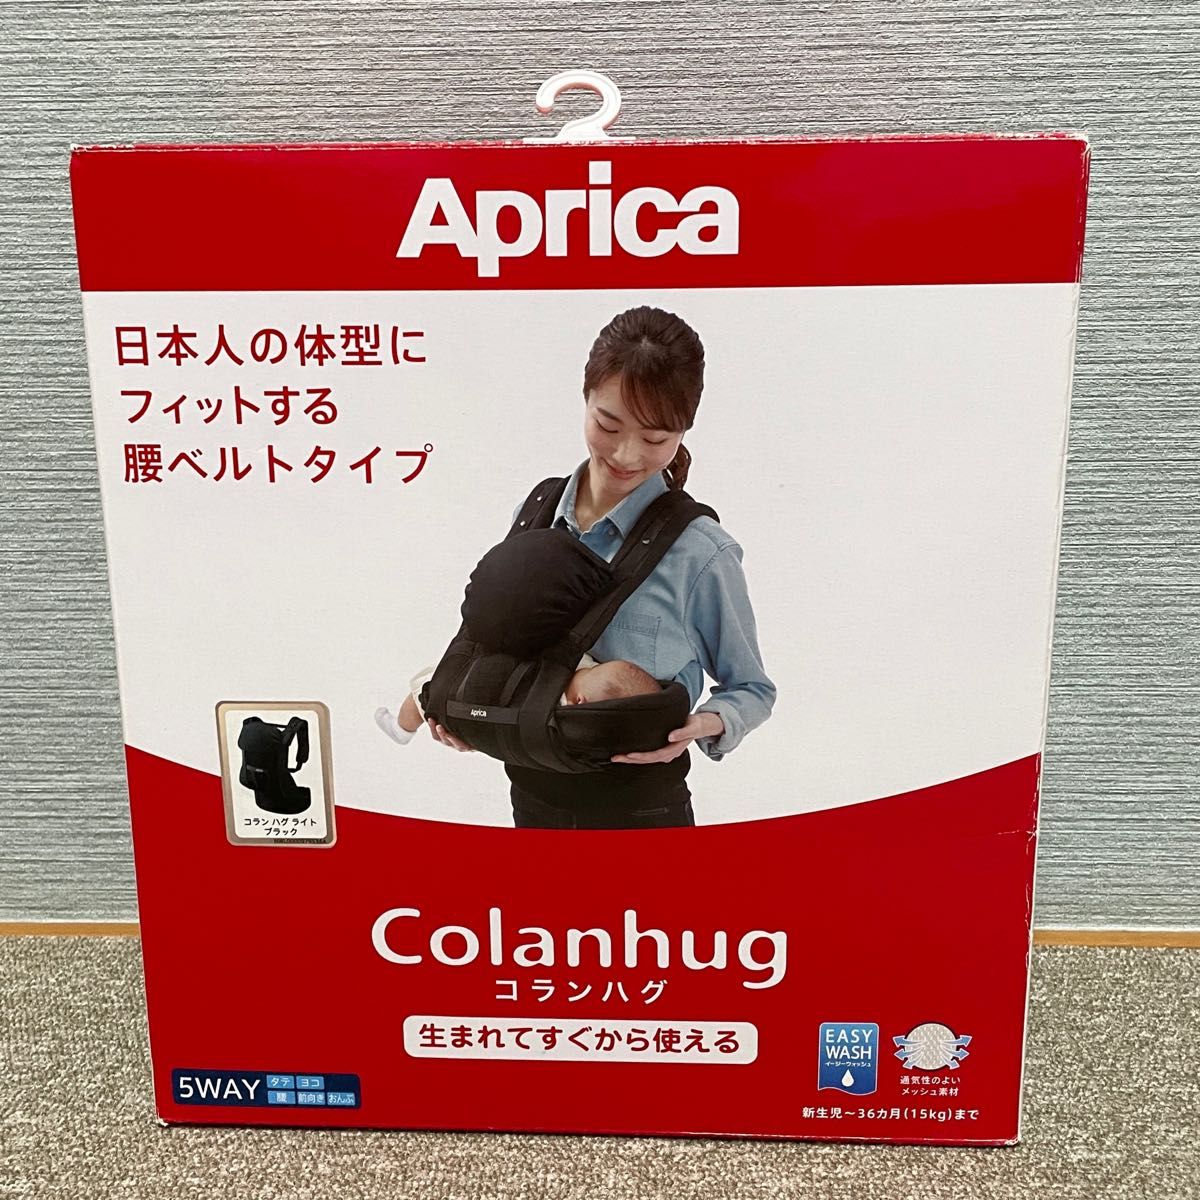 【ほぼ新品】Aprica アップリカ 抱っこ紐 コランハグ ライト (ブラック)